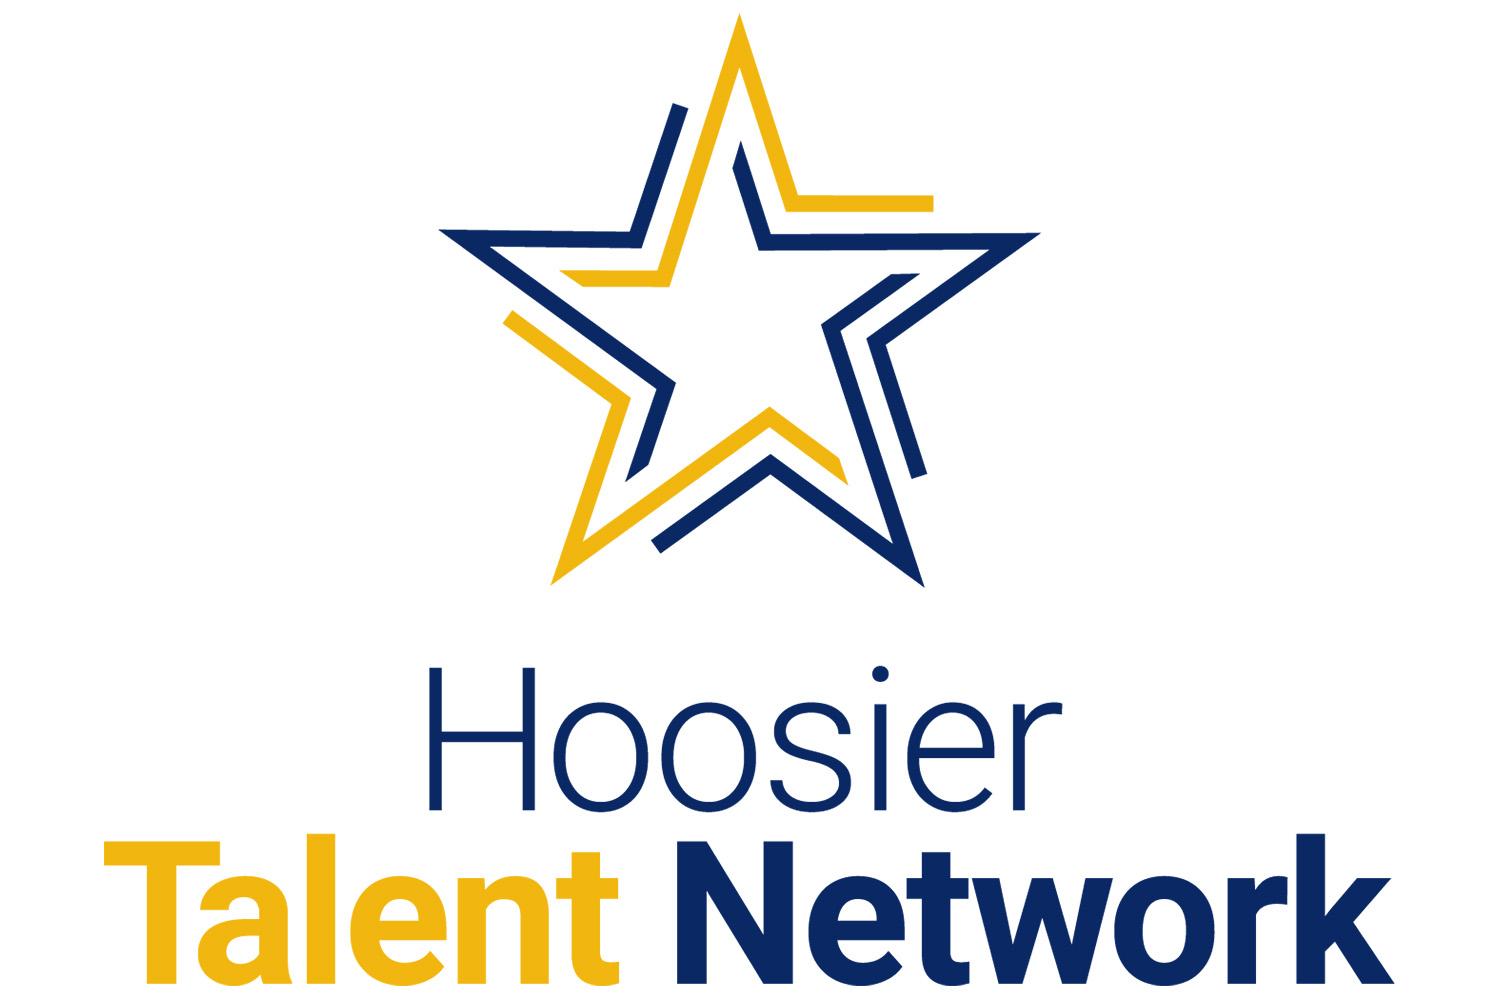 The Hoosier Talent Network logo.